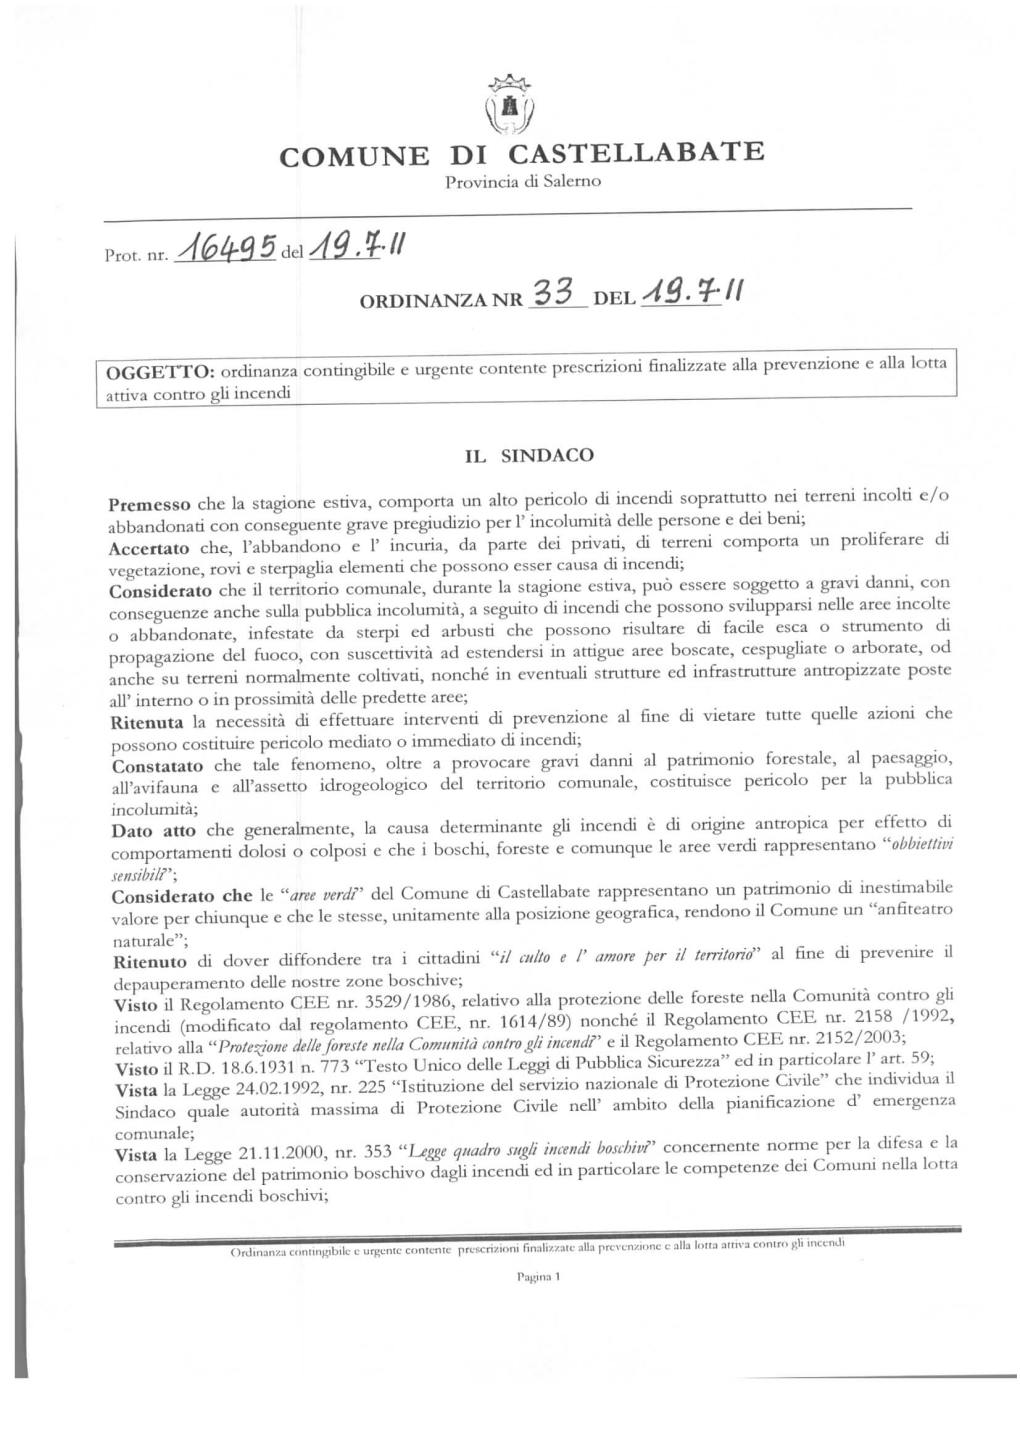 Ordinanza N.33 Del 19.07.2011